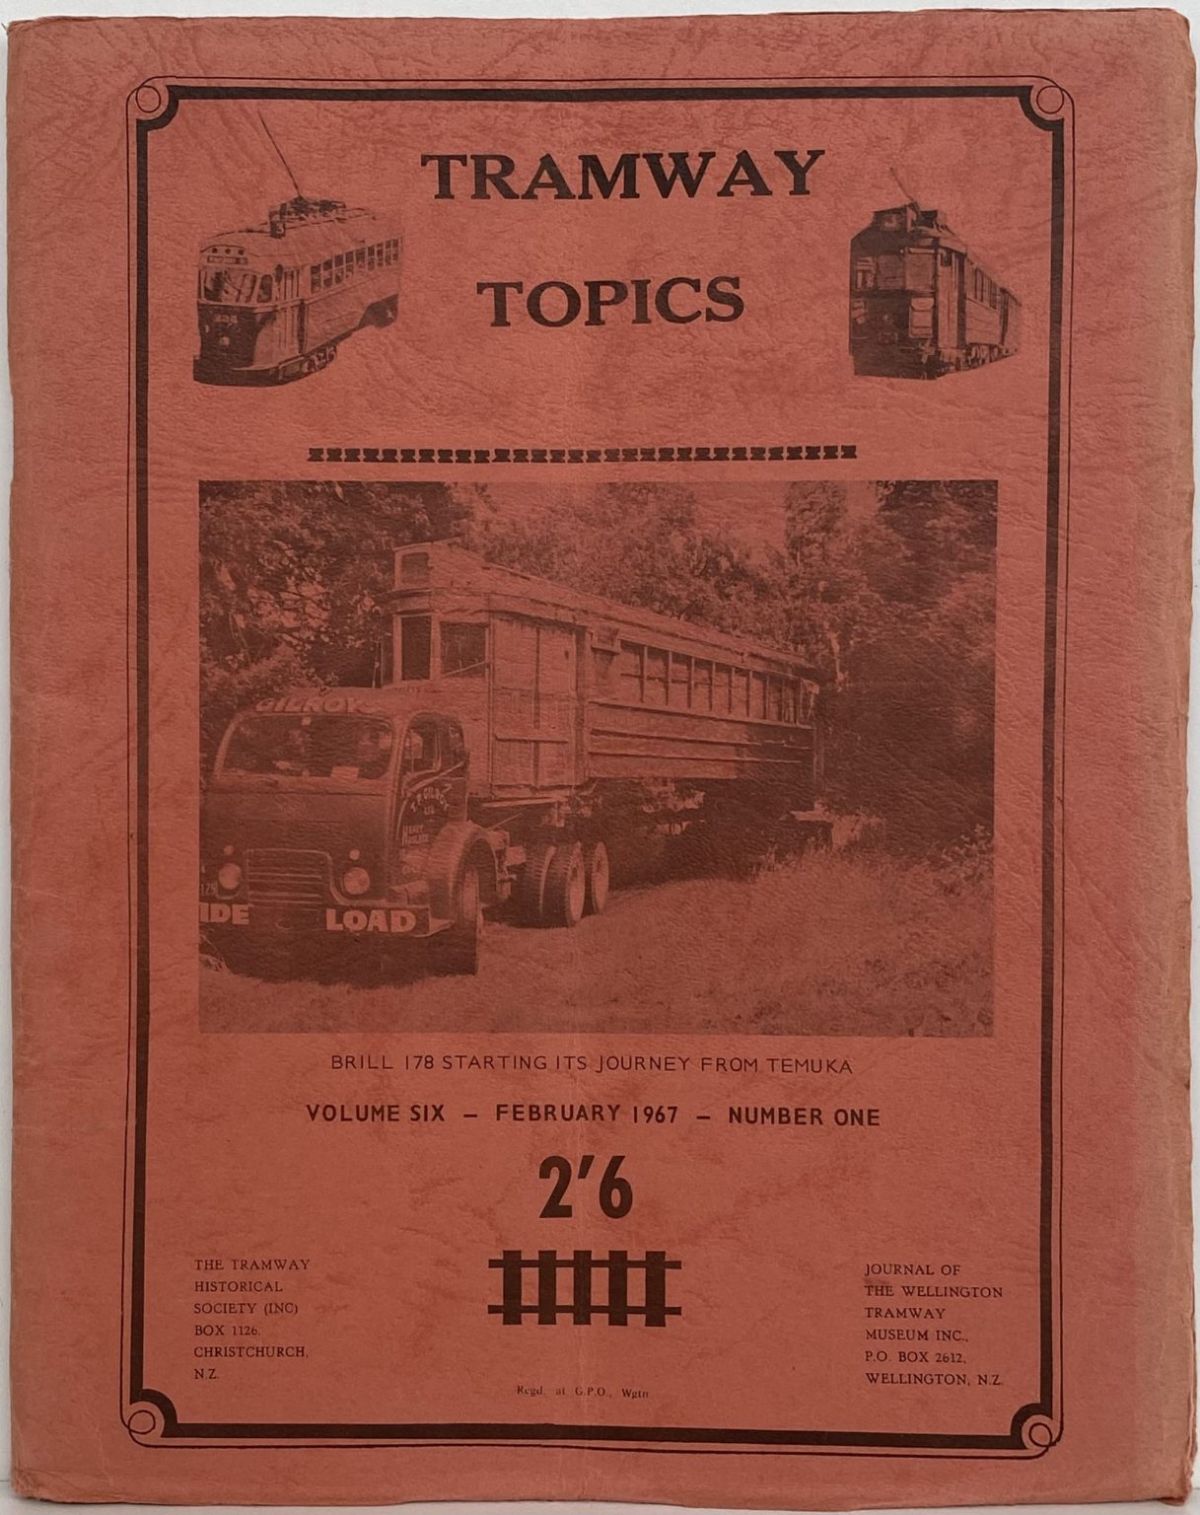 TRAMWAY TOPICS Vol 6, No 1, February 1967